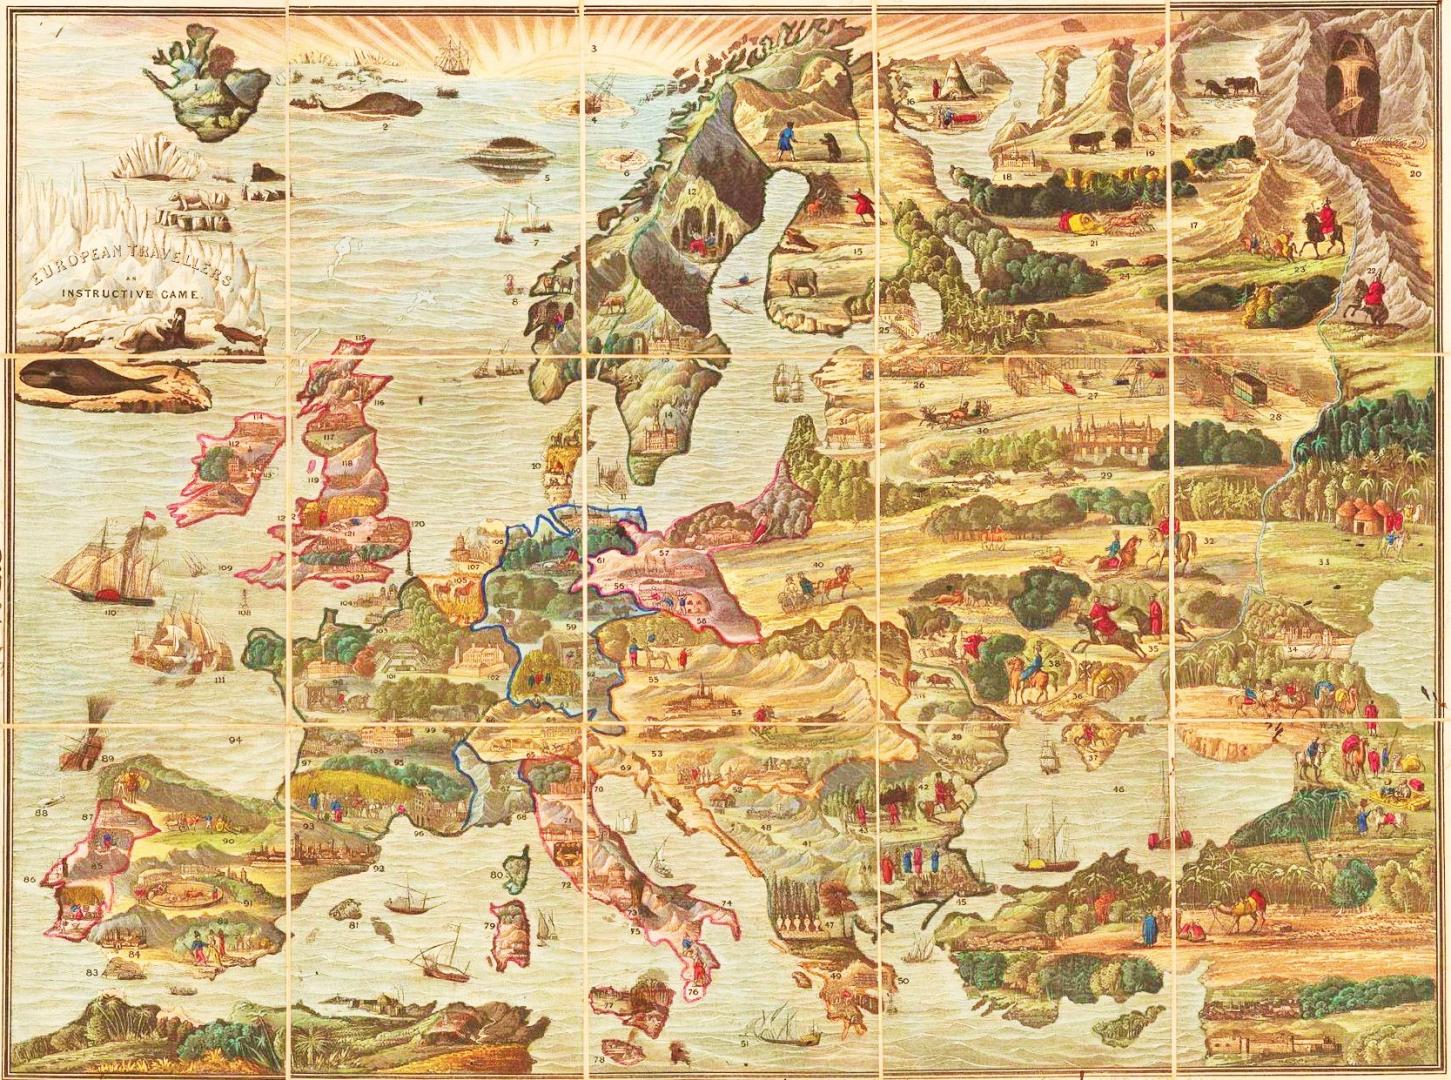 European Travellers, gioco geografico pubblicato nel 1823 dal britannico Edward Wallis